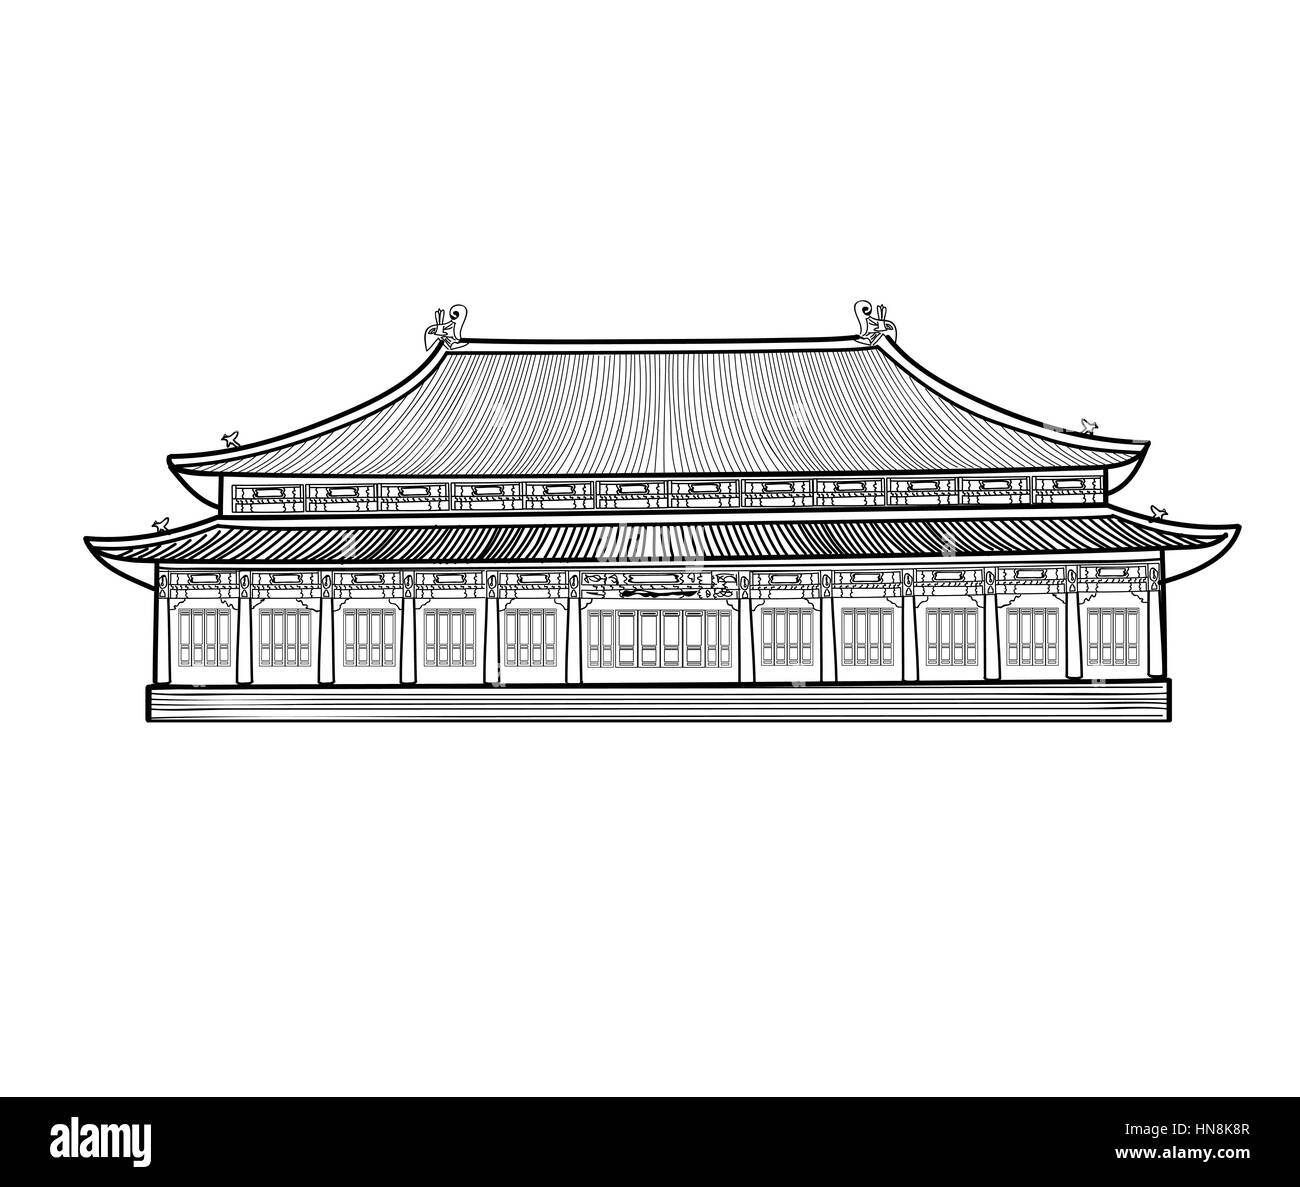 Asian pavilion buidling. maison dans un style asiatique Chine chinois. architectura. Illustration de Vecteur